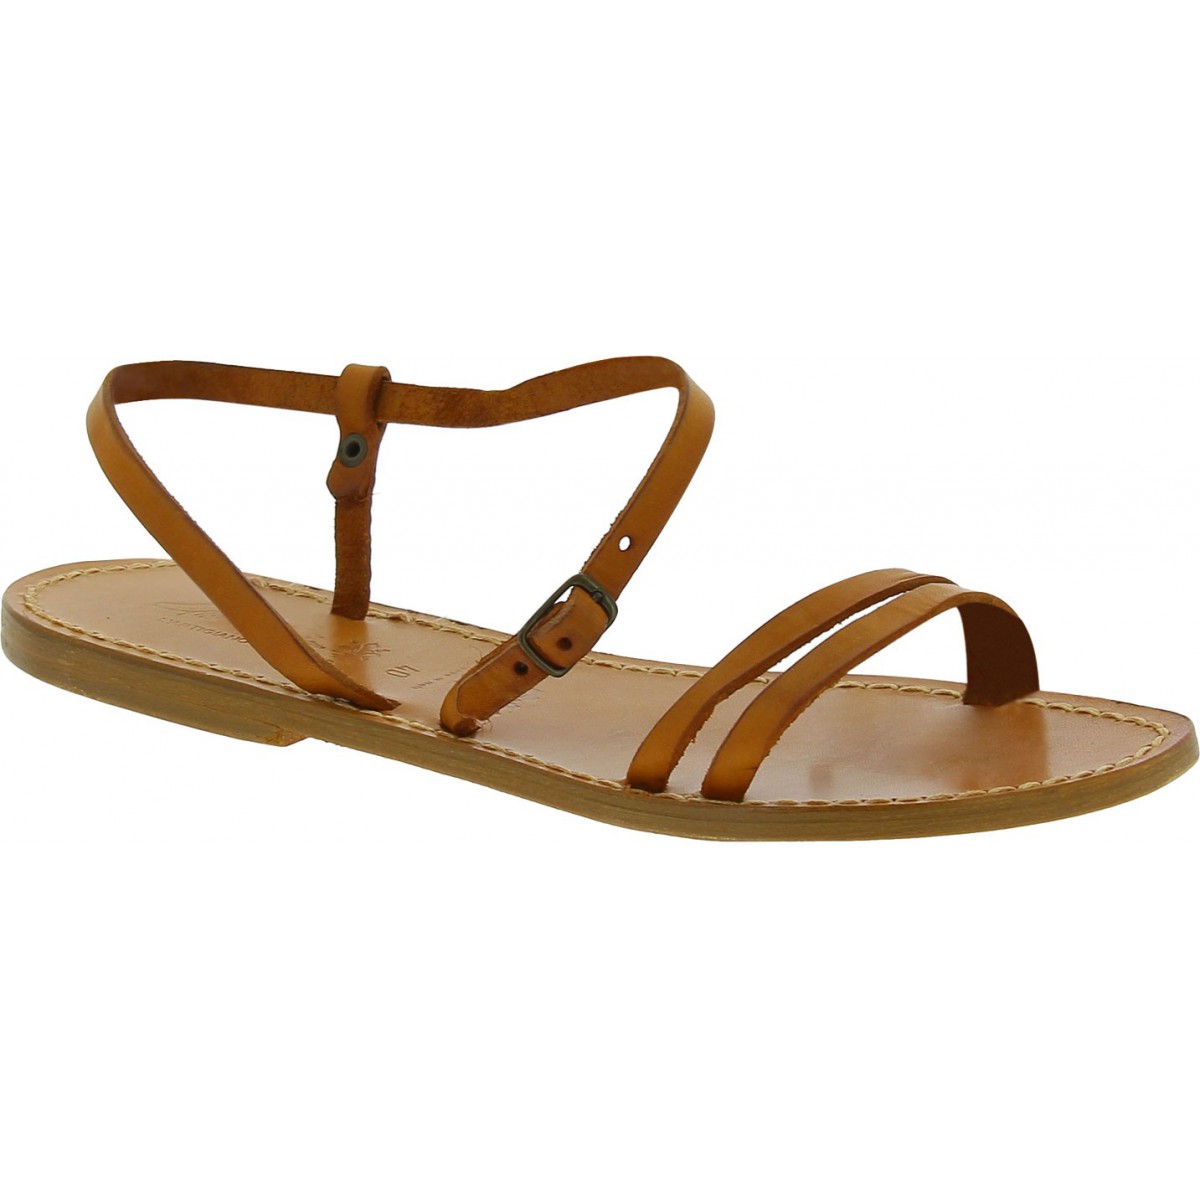 Sandalias planas de color marrón claro para mujeres | Artesanos del cuero